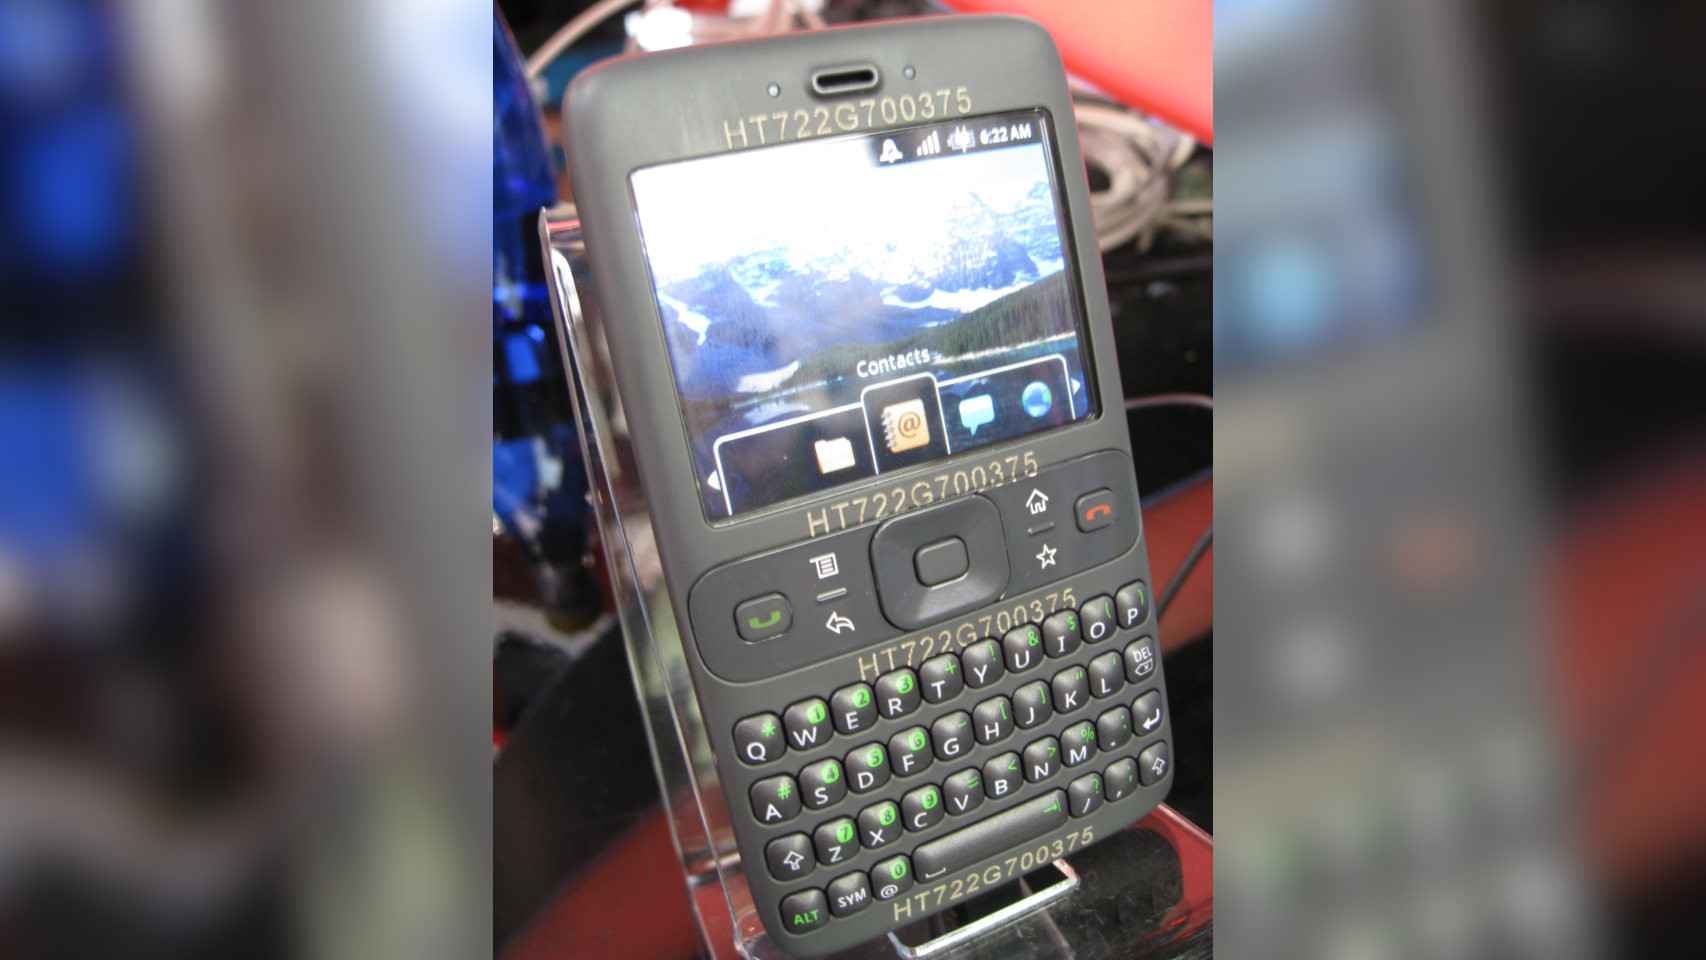 El prototipo Sooner planteó Android como una versión de Blackberry